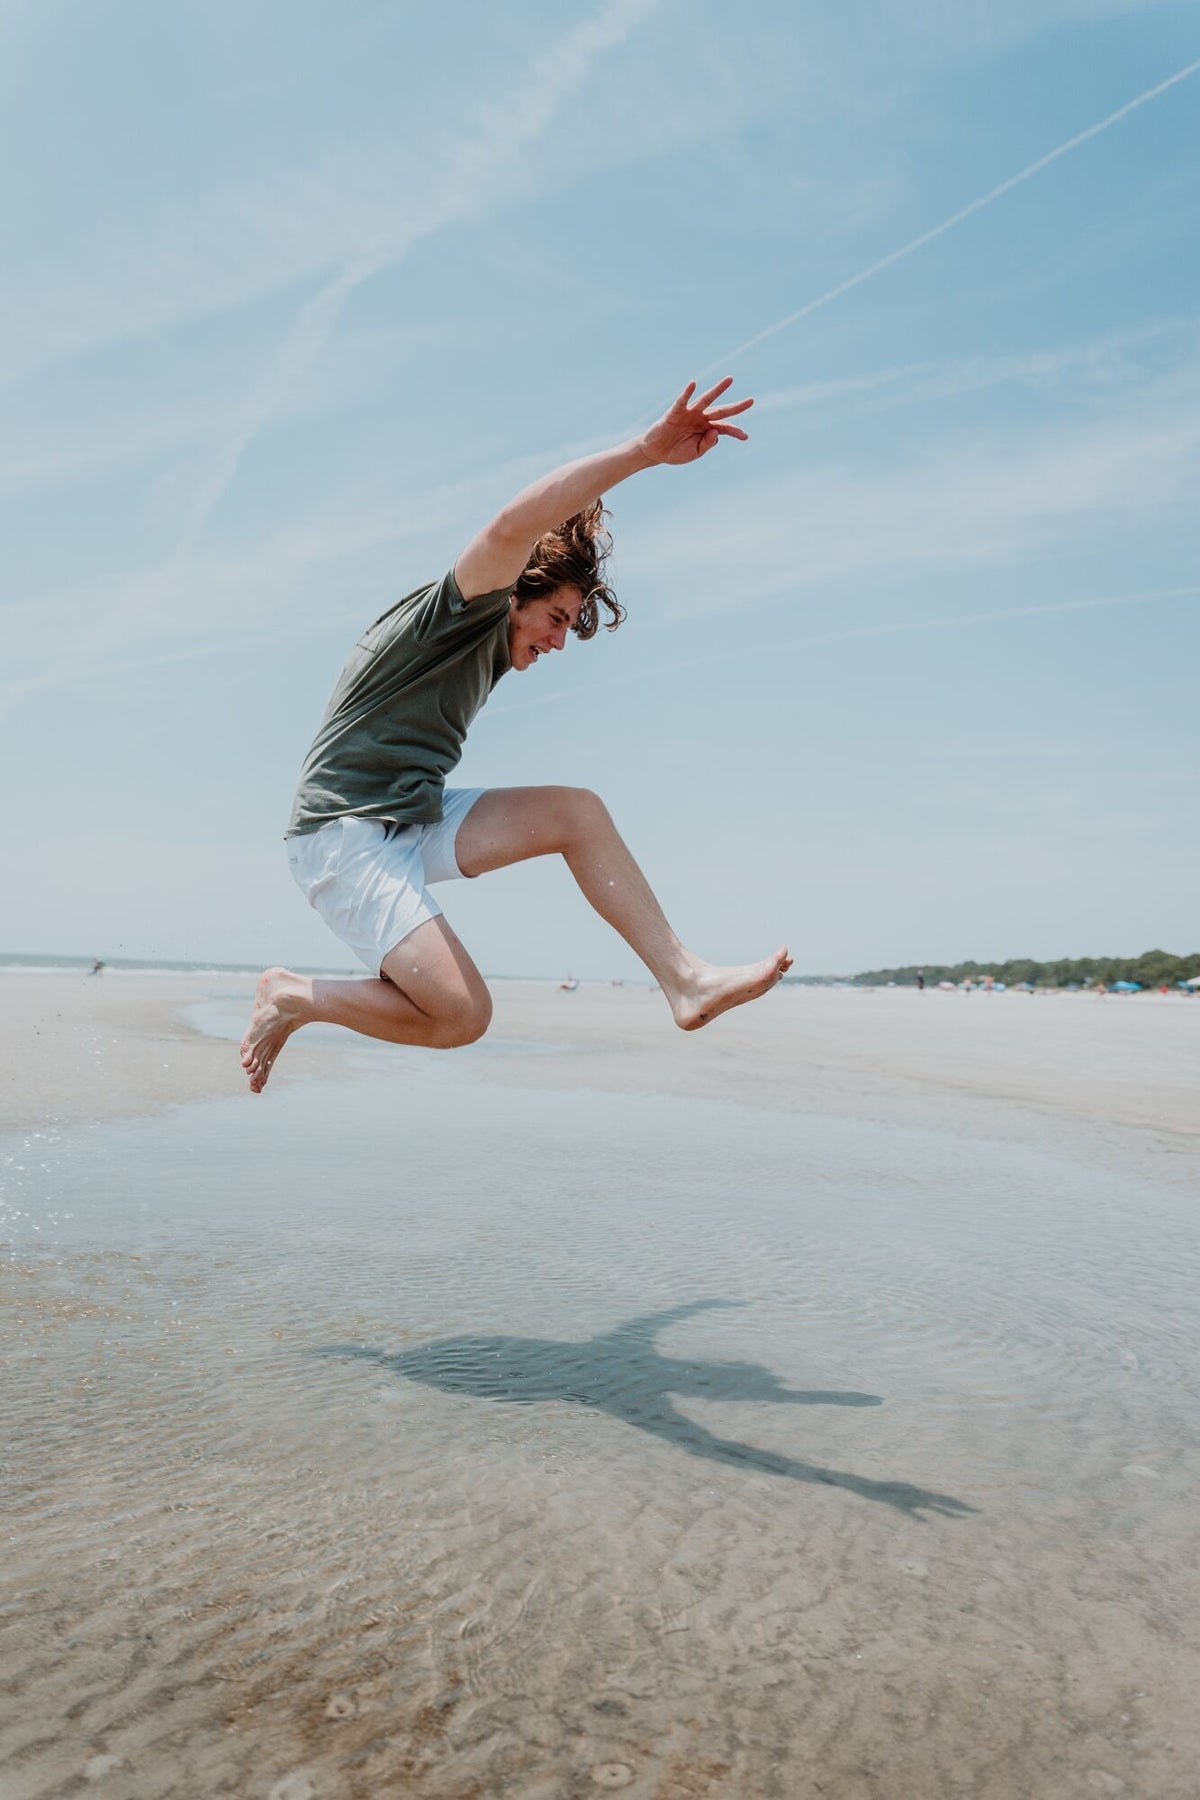 Mann springt energiegeladen am Strand in die Luft